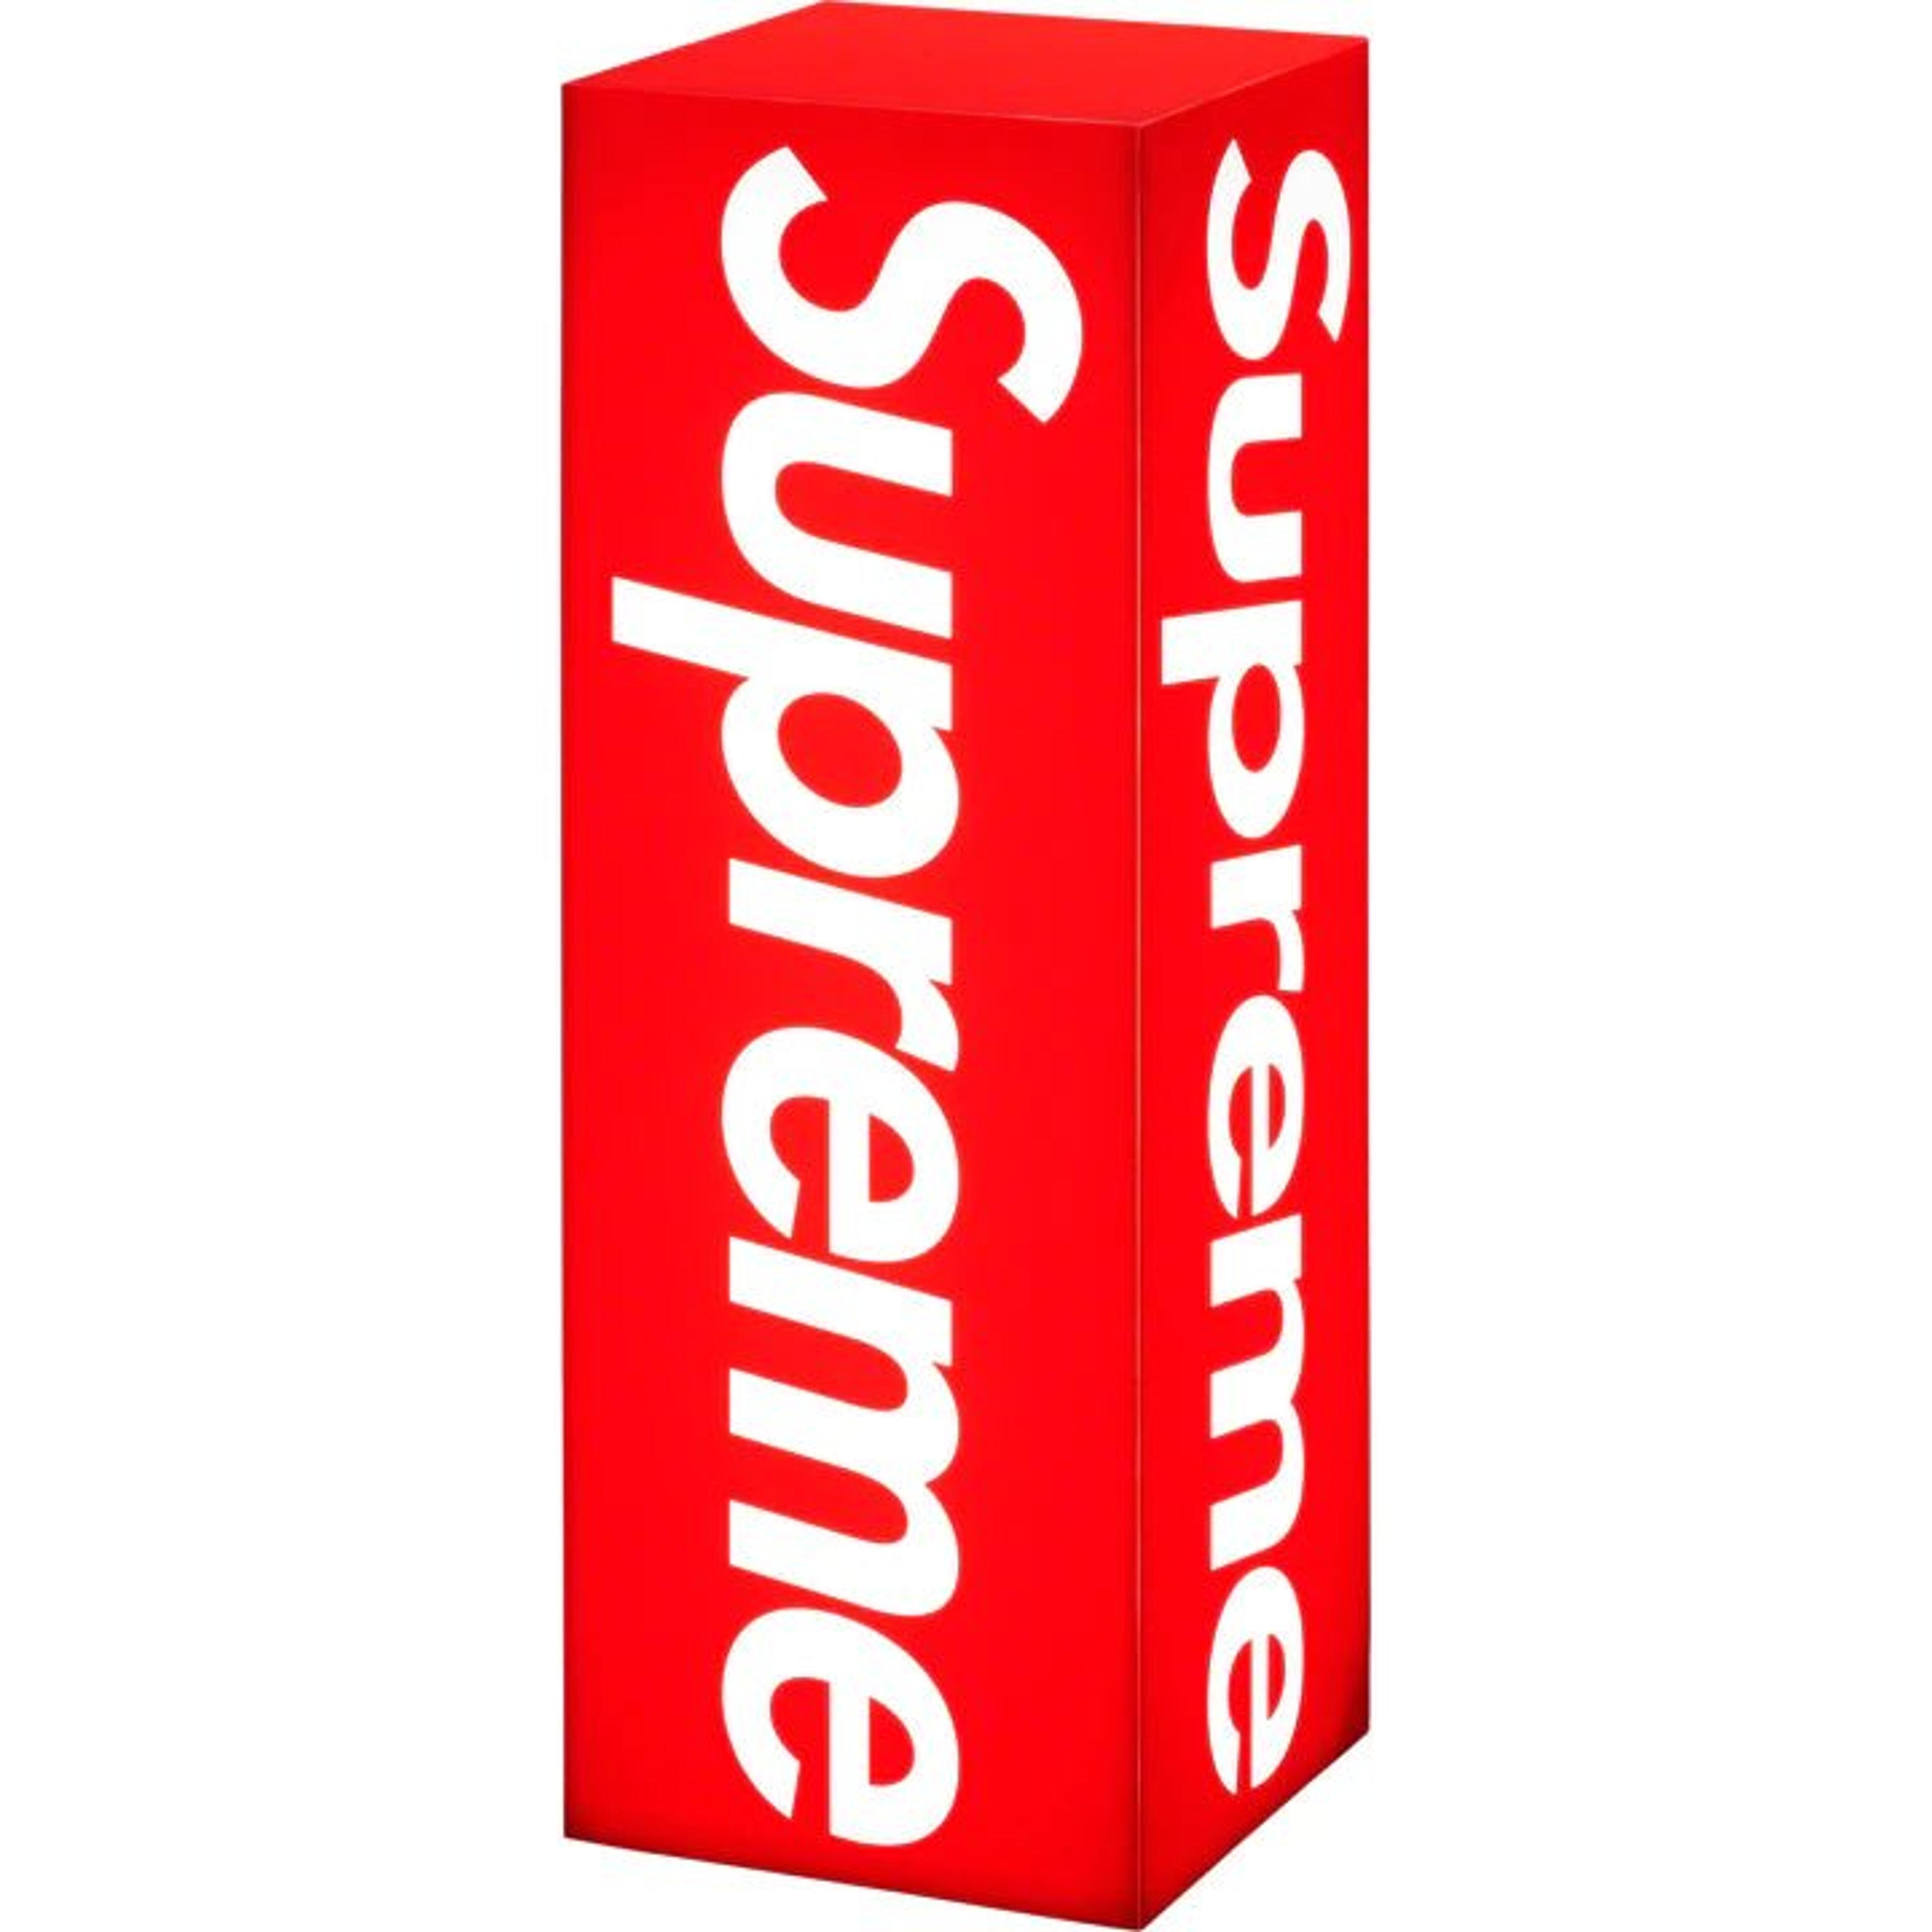 Supreme Red Box Logo Sticker, Authentic